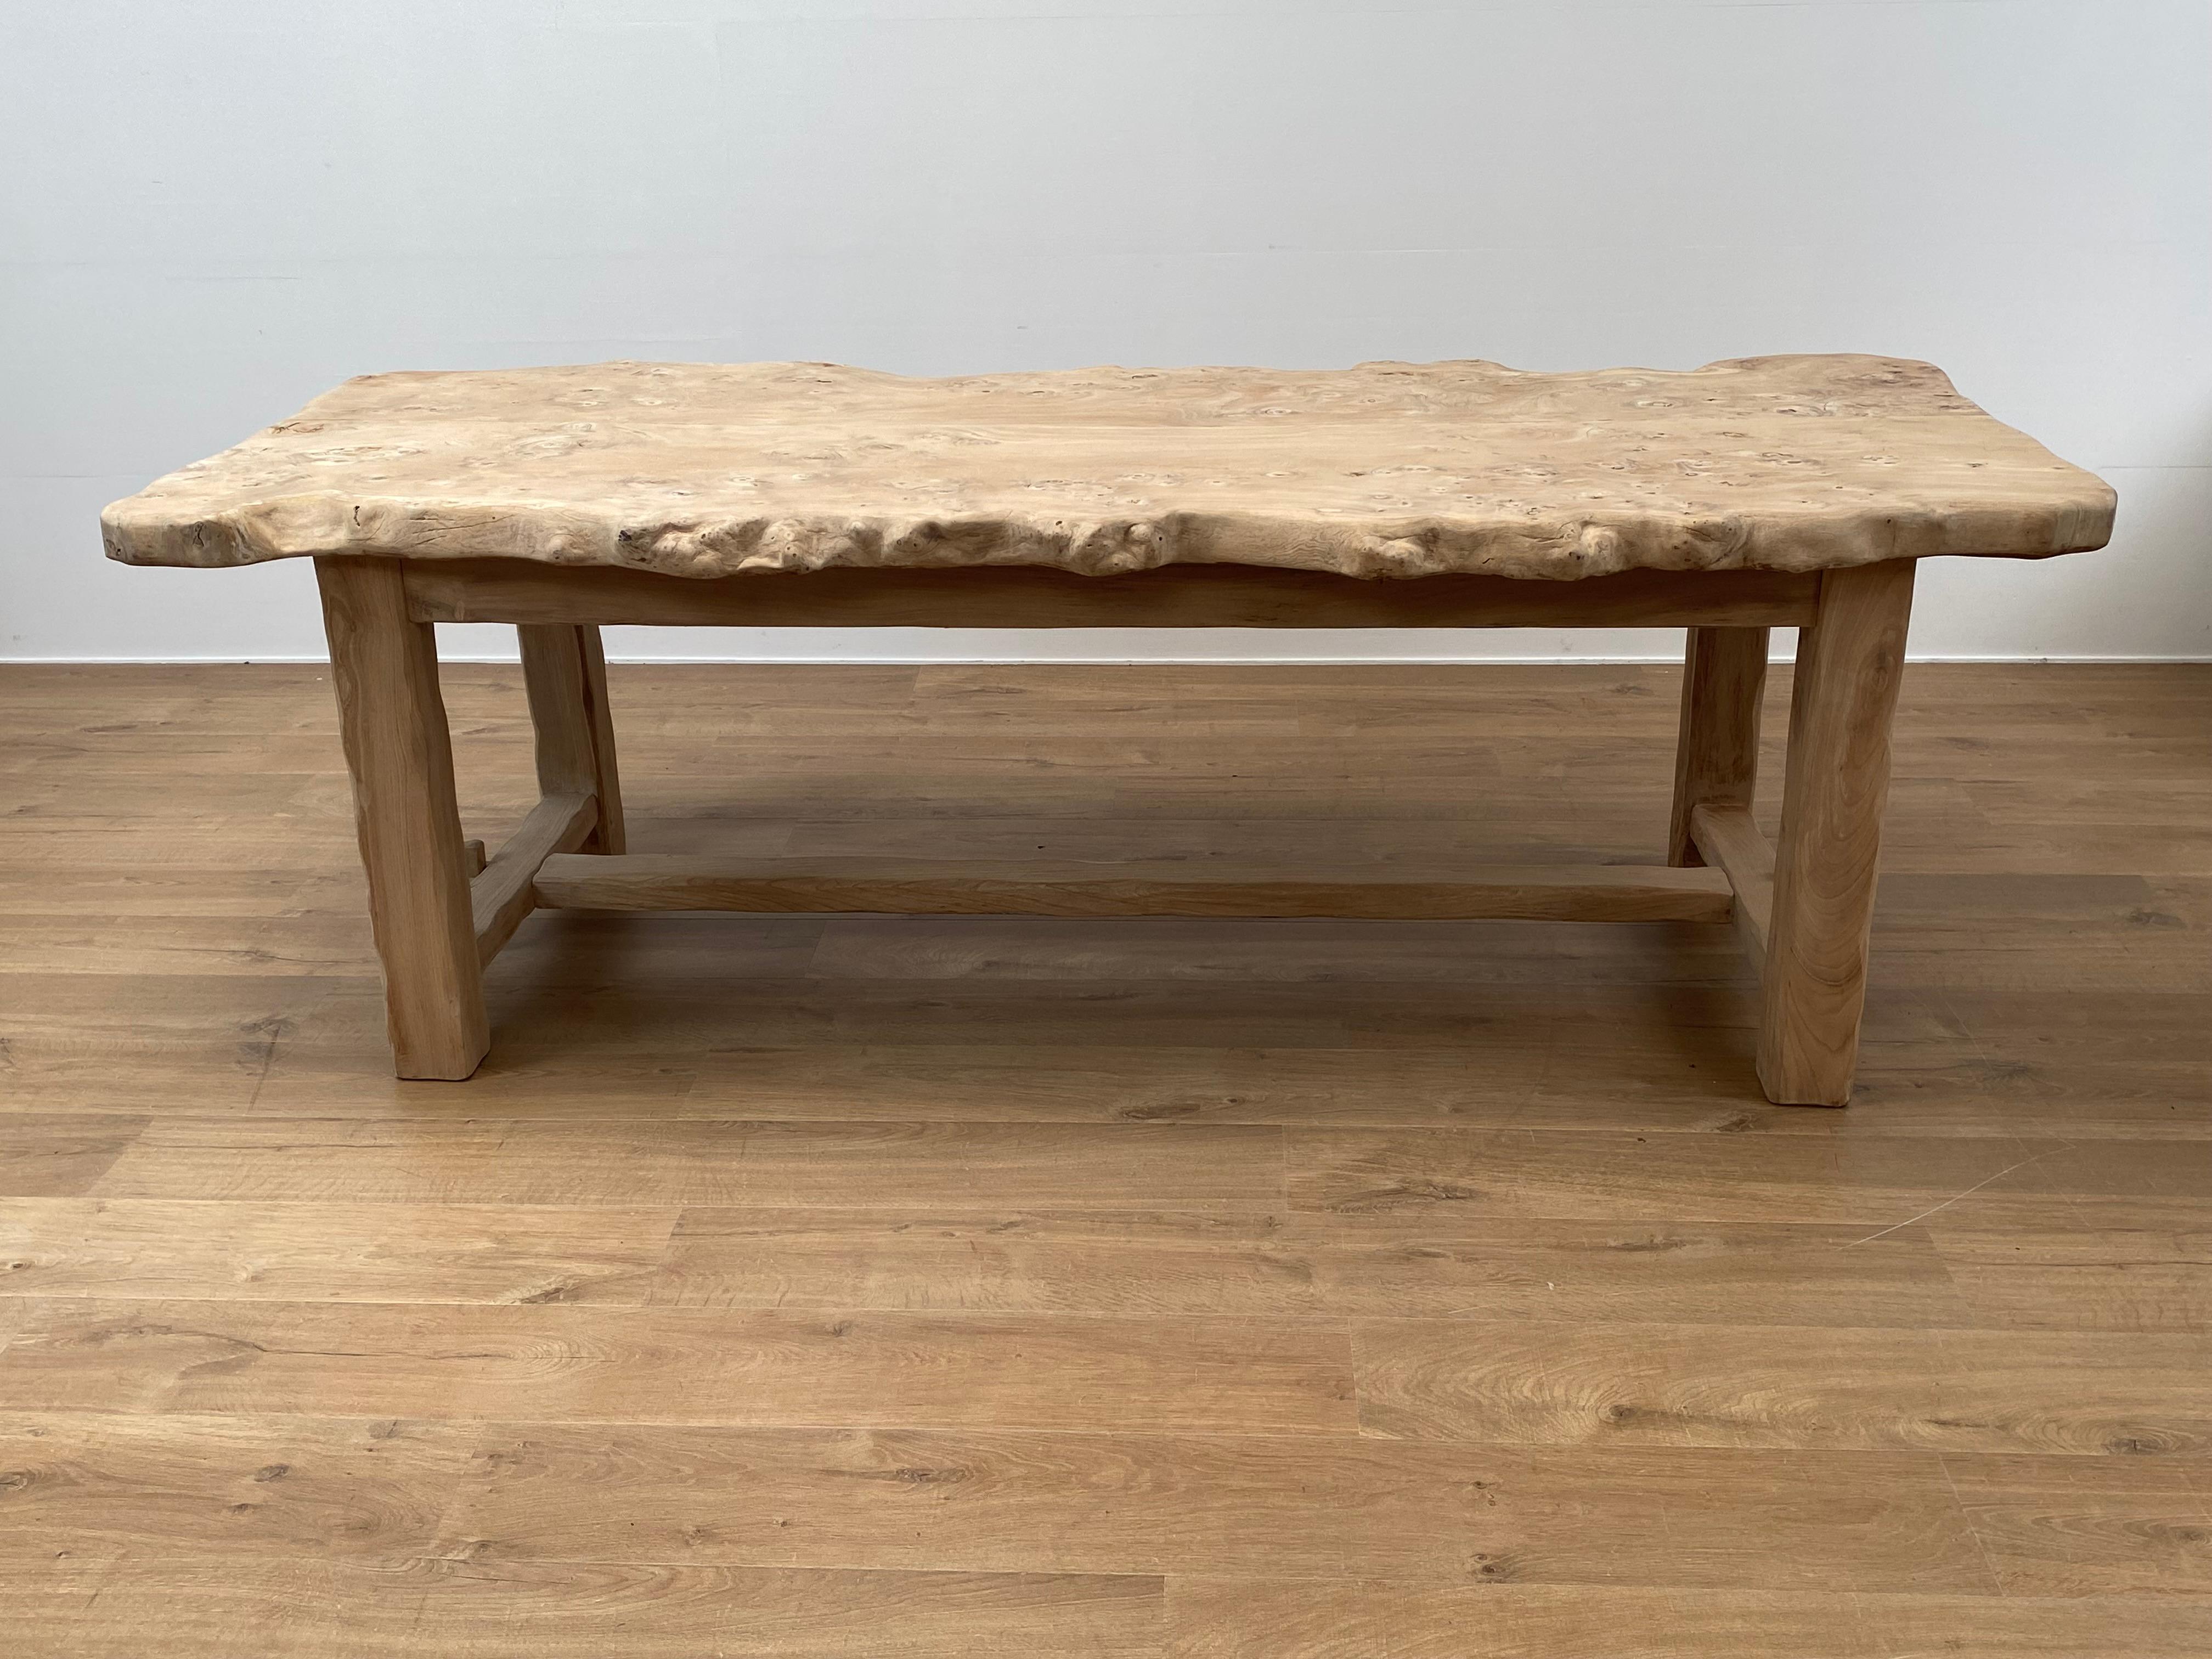 Außergewöhnlicher brutalistischer Tisch aus gebleichtem Ulmenholz, aus Frankreich aus den 1960er Jahren,
schöne Patina und Glanz des Wurzelholzes,
unregelmäßige und natürliche Form der Tischplatte,
der Tisch steht auf 4 Beinen mit Streckbank,
ein